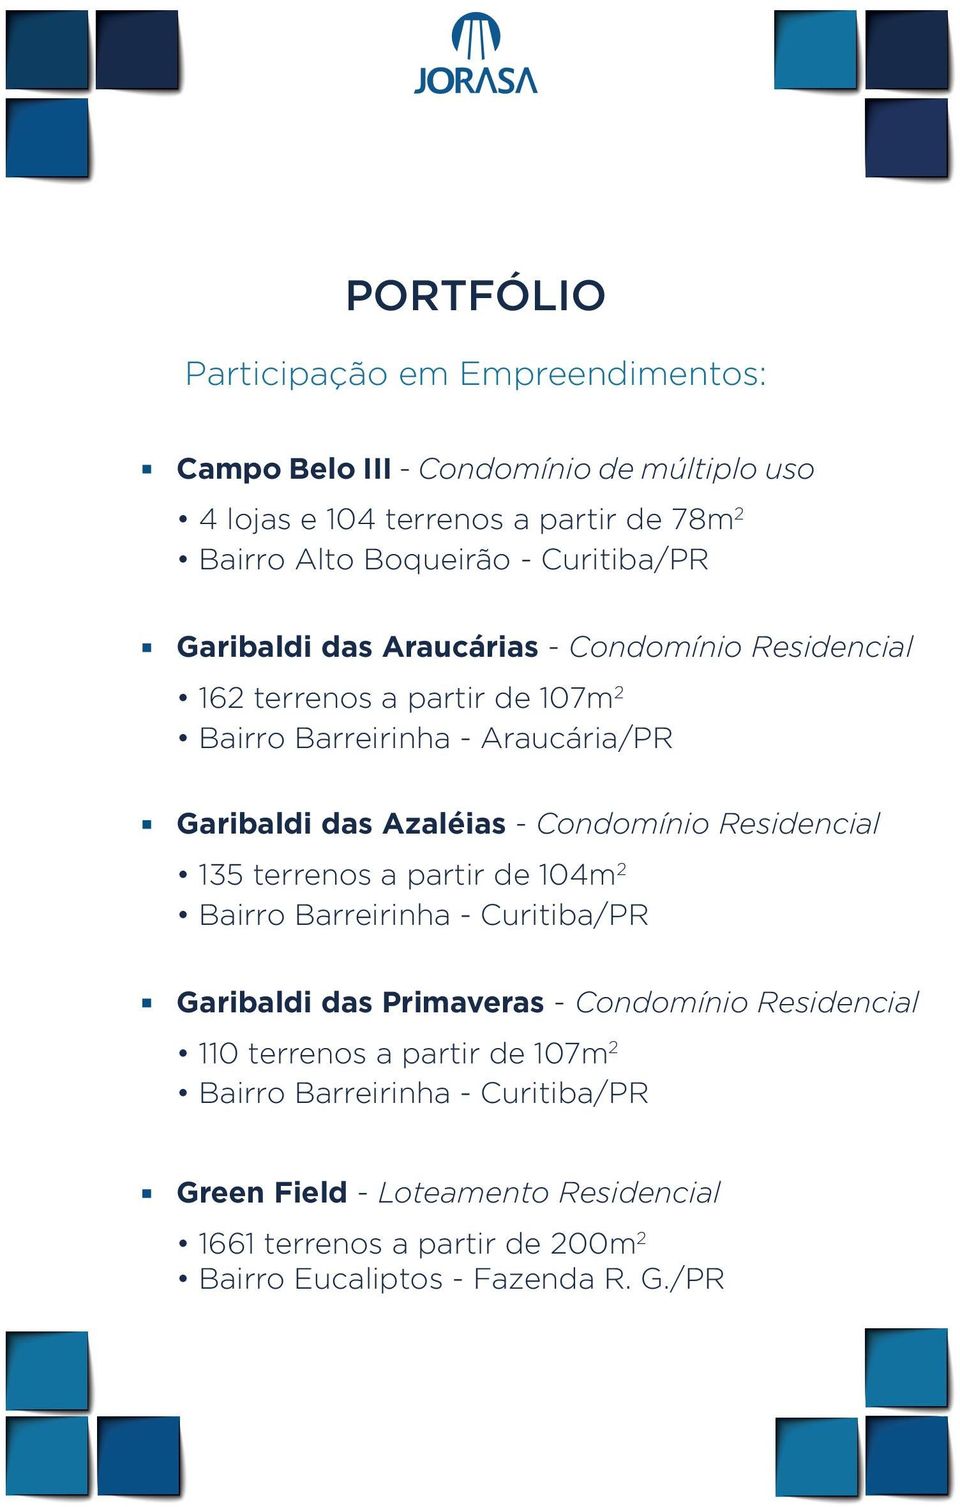 Condomínio Residencial 135 terrenos a partir de 104m 2 Bairro Barreirinha - Curitiba/PR Garibaldi das Primaveras - Condomínio Residencial 110 terrenos a